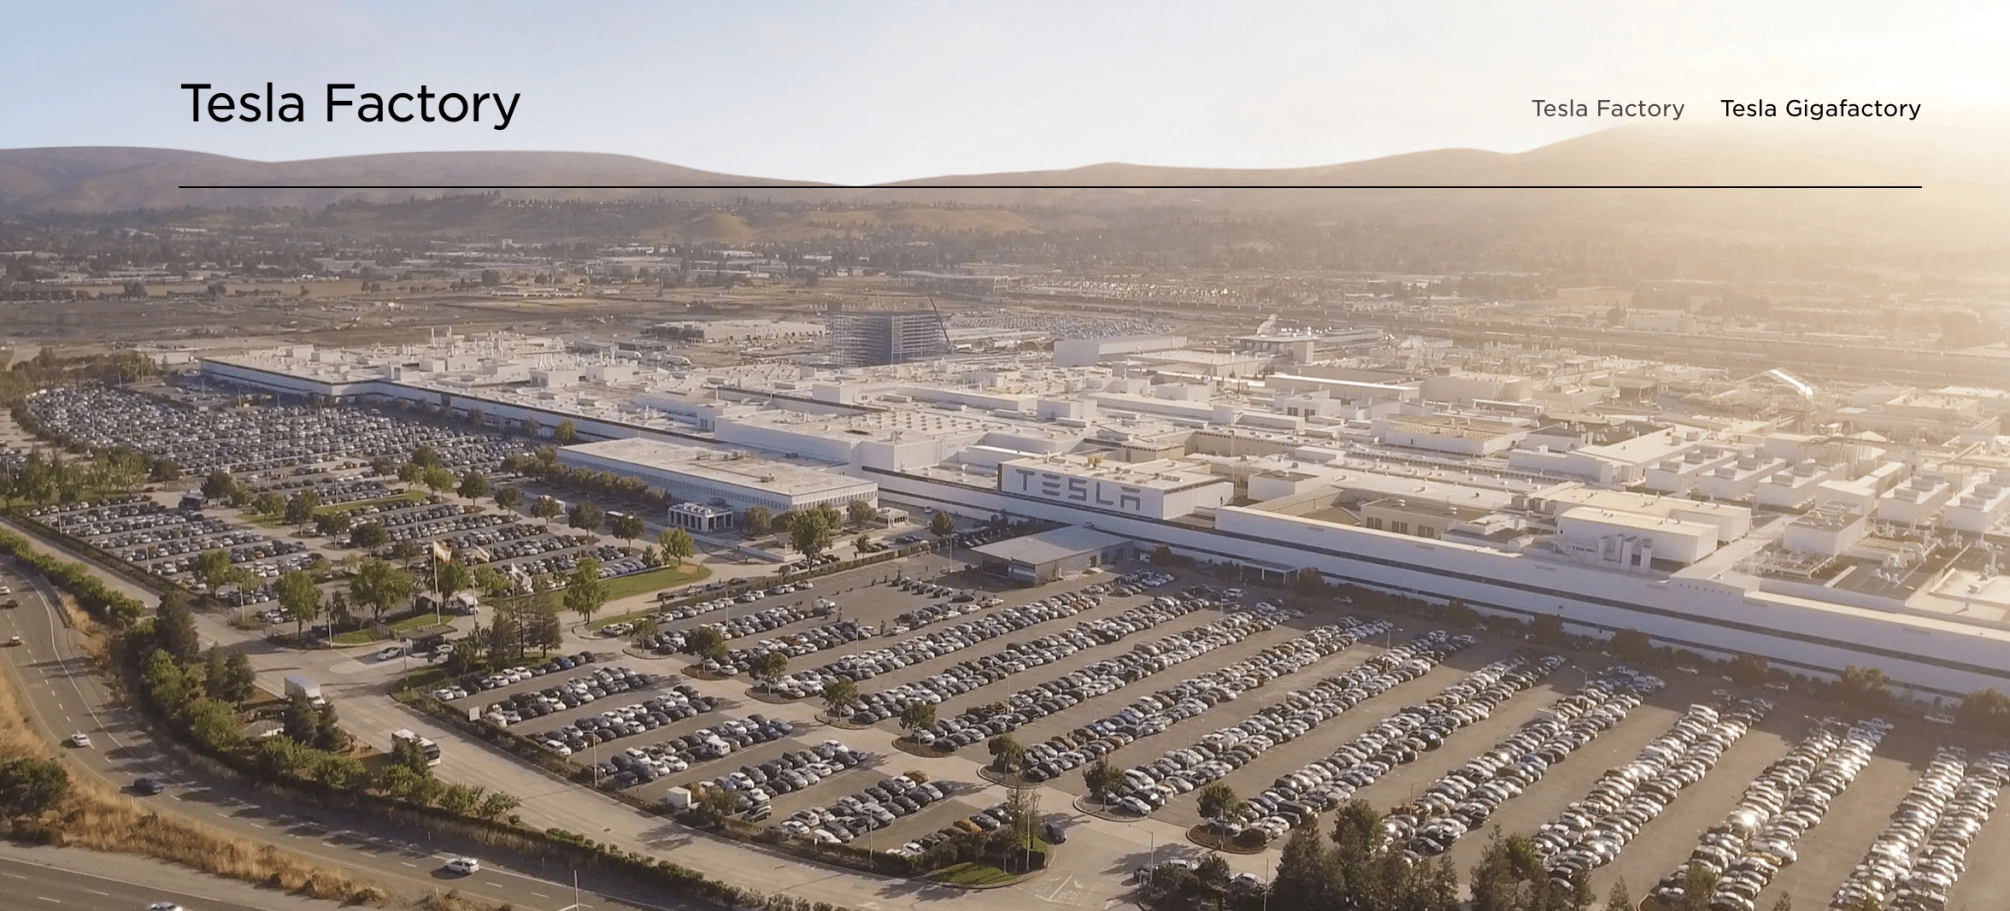 Tesla factories